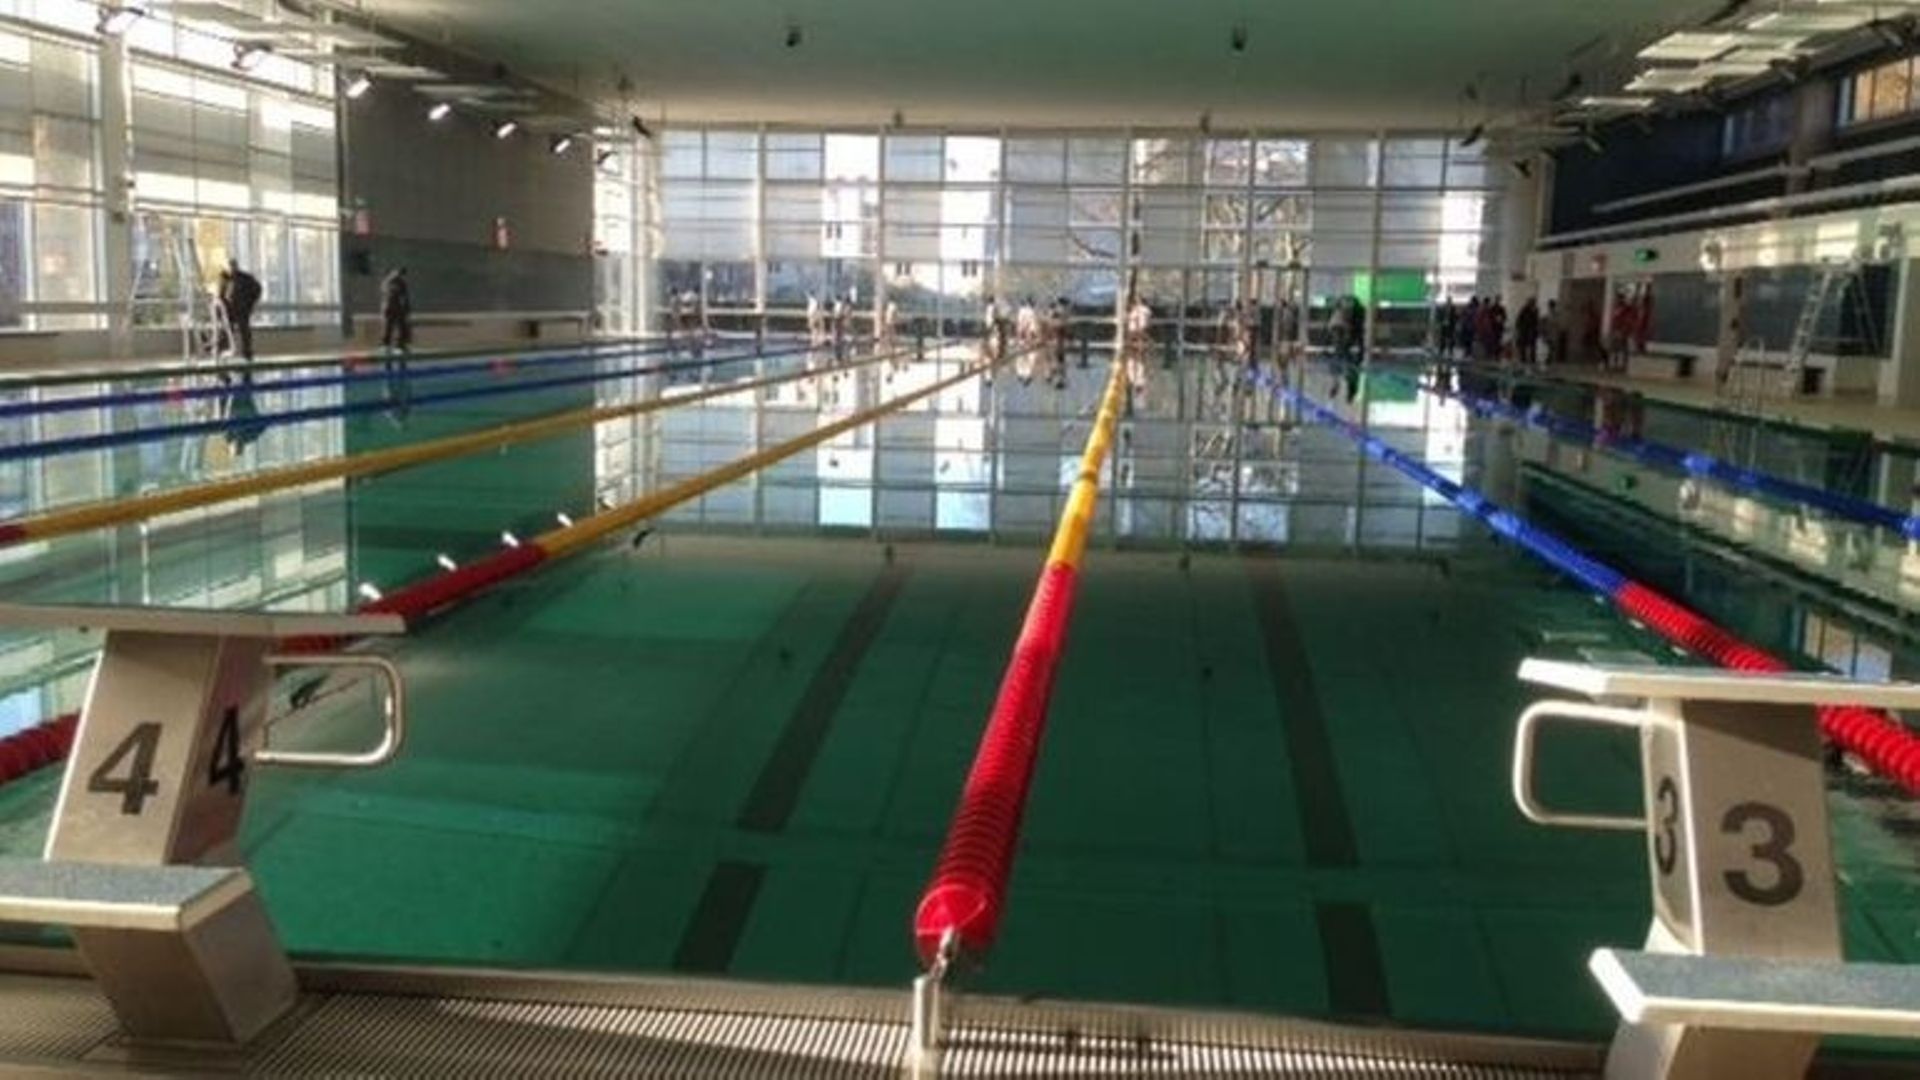 Un dirigeant de club de natation au coeur d'une polémique à Molenbeek